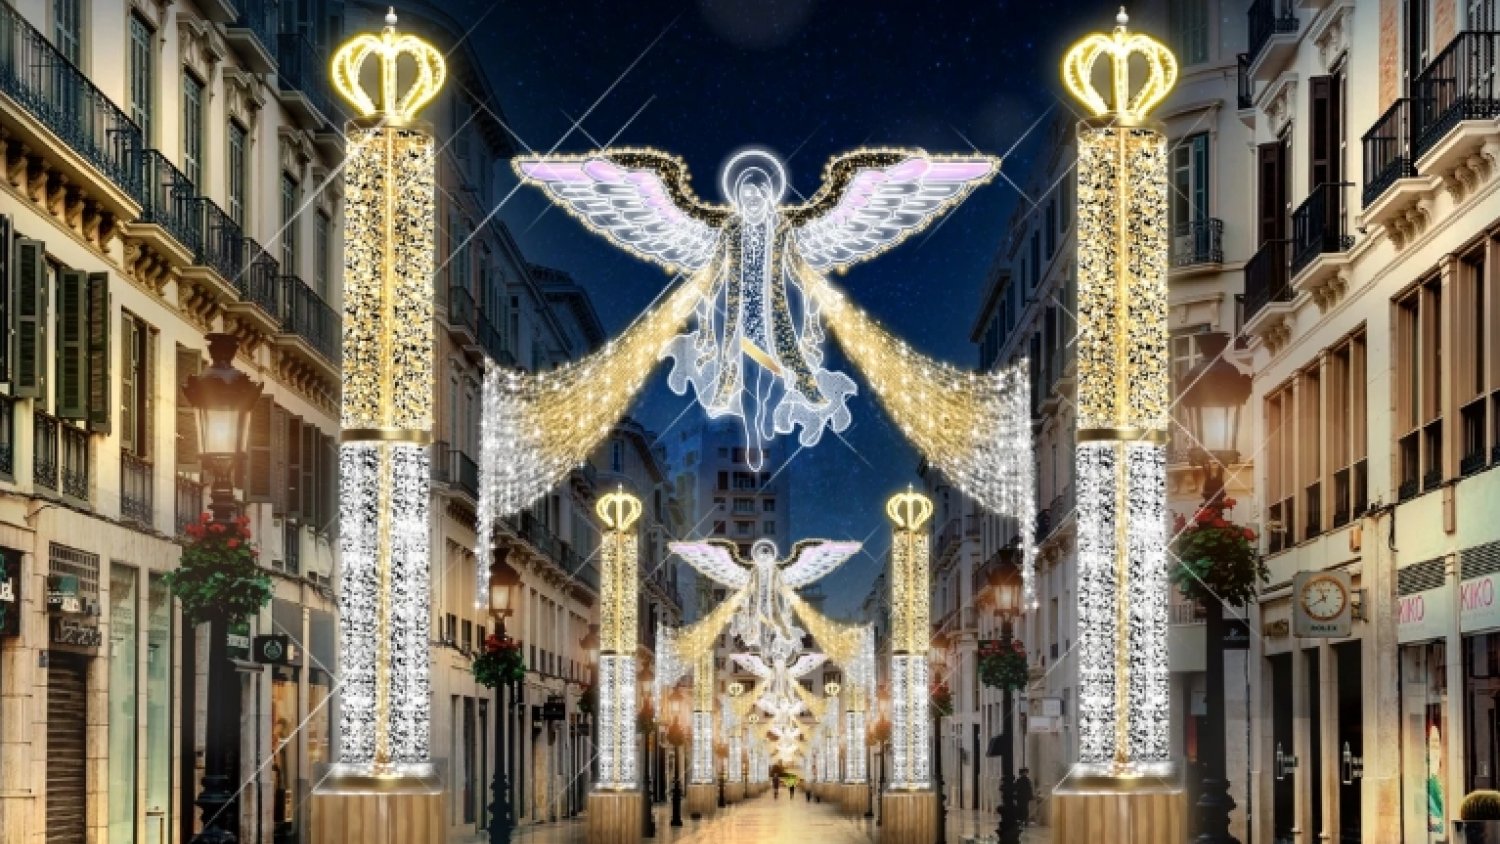 Canal Málaga retransmite en directo el encendido del alumbrado navideño